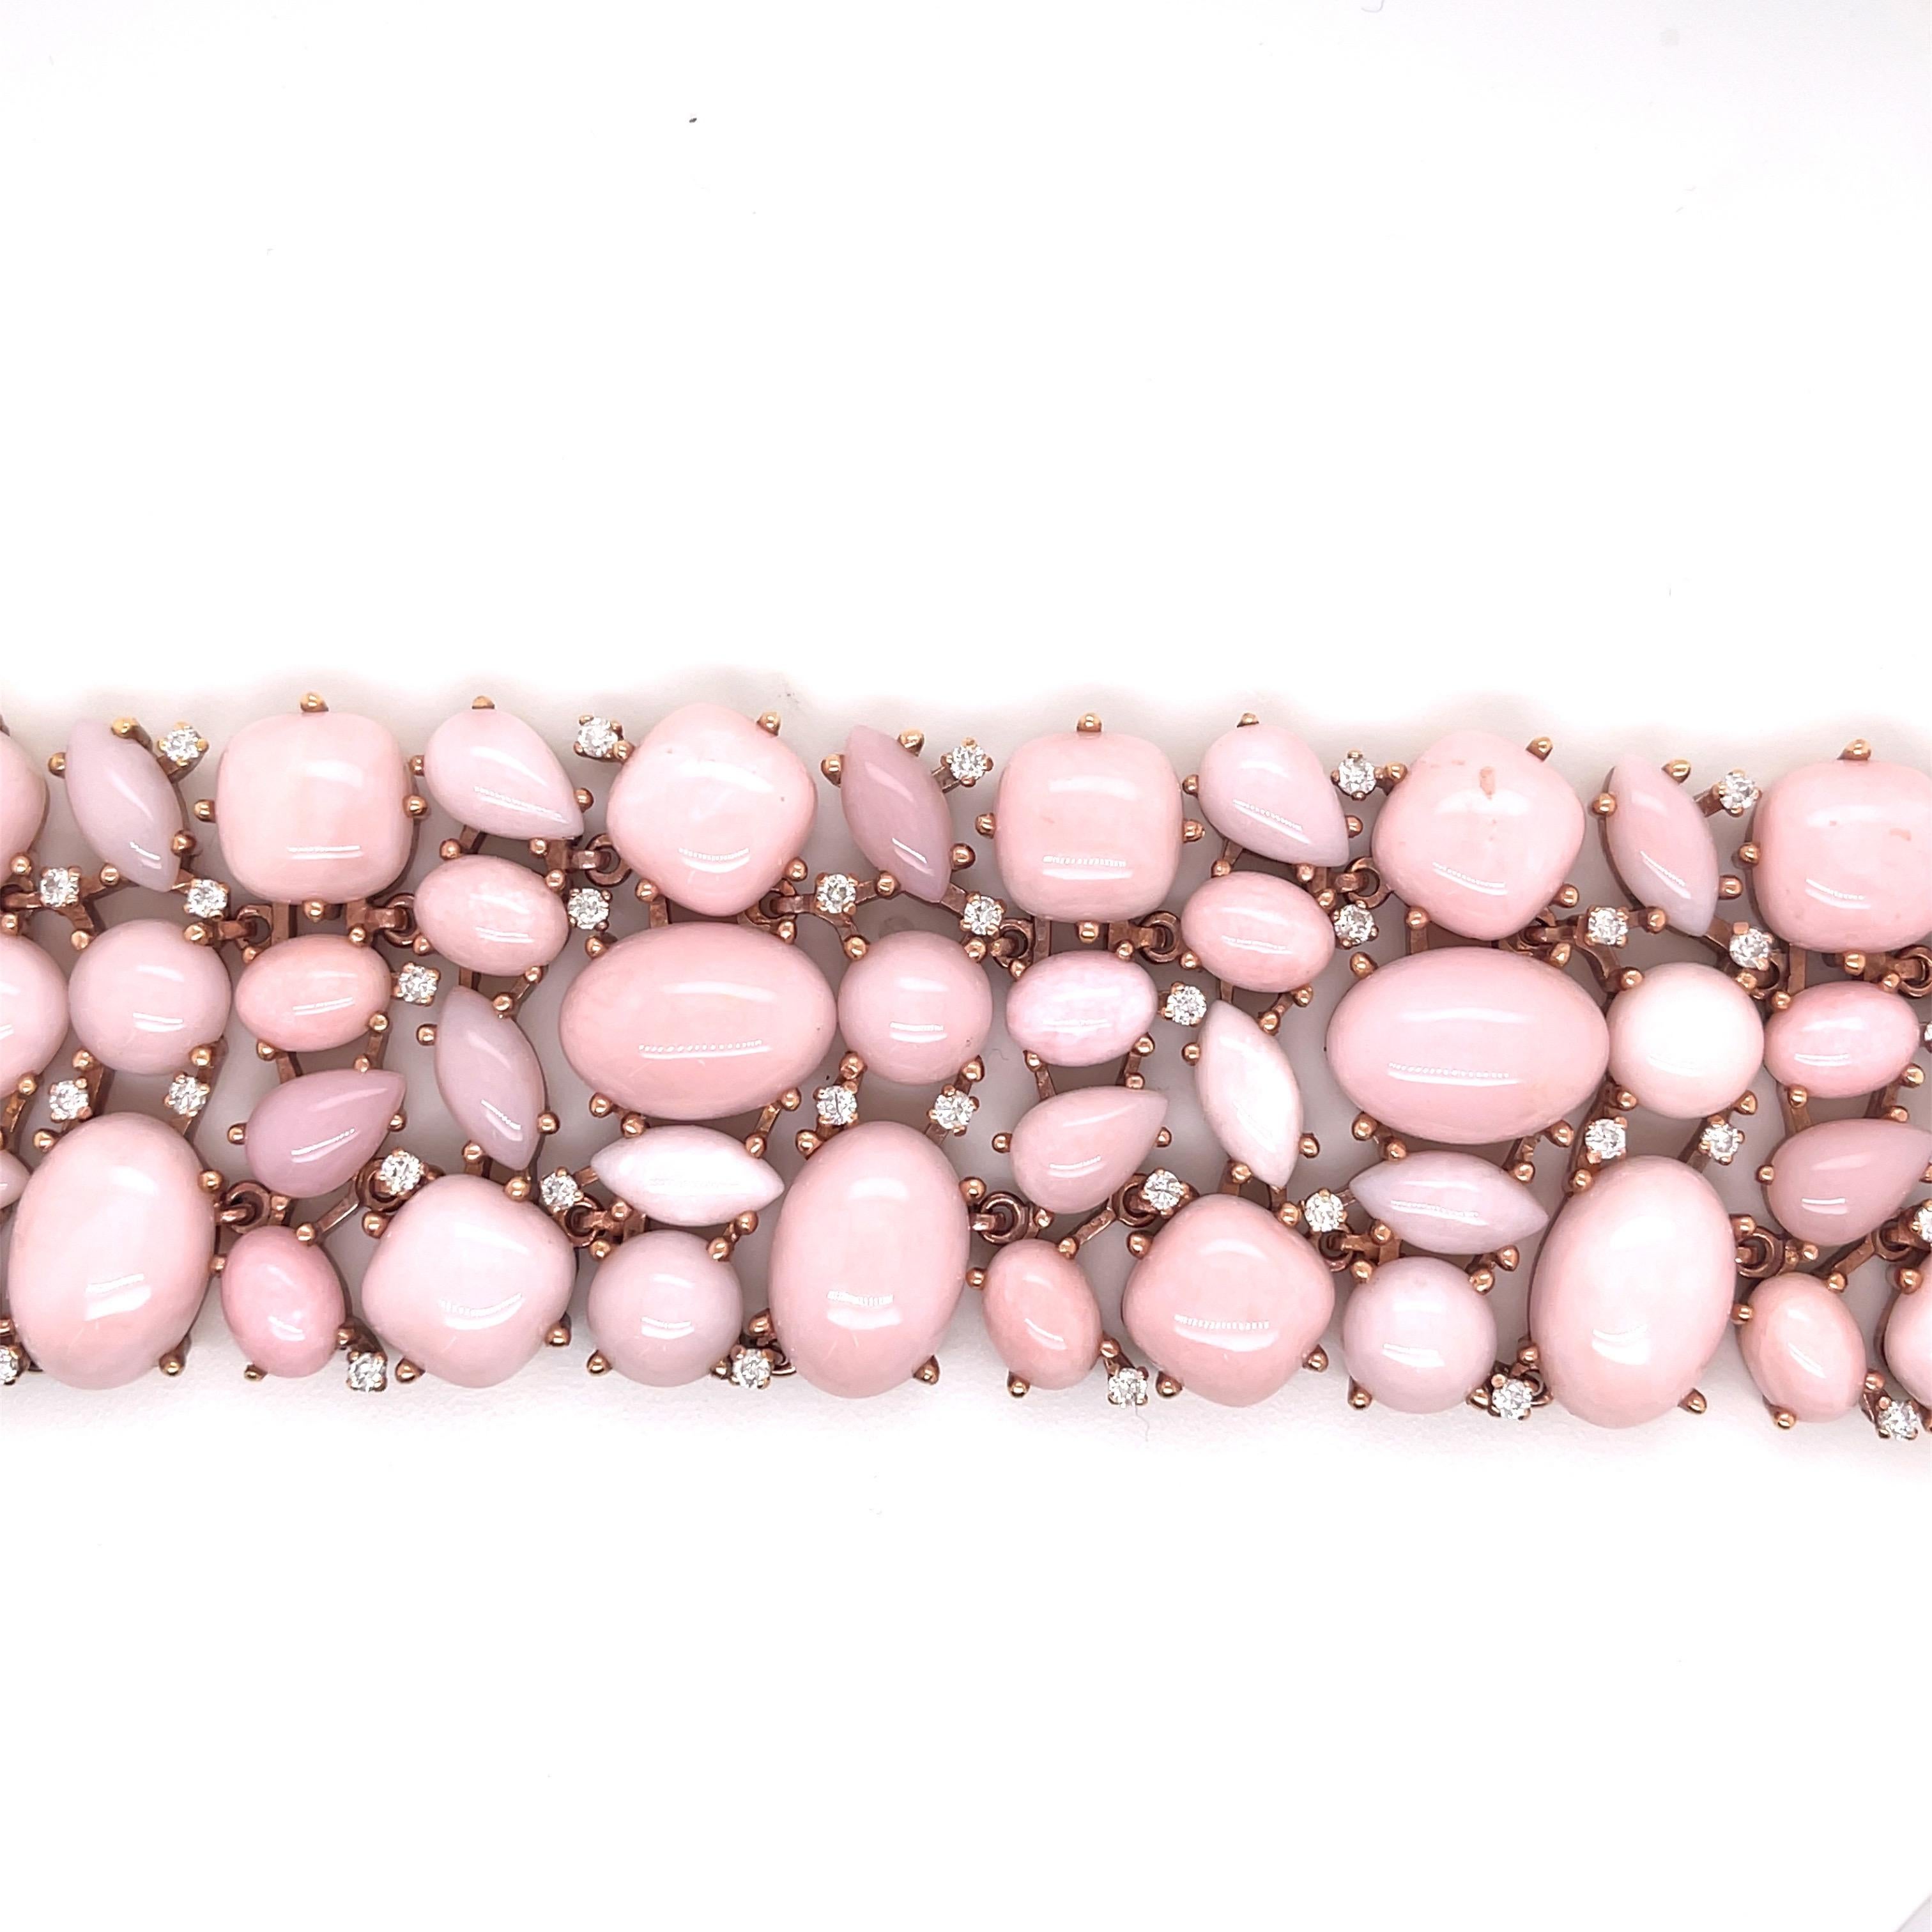 One of a kind, hand made Opal and diamond bracelet
Approximately 1 Carat of Diamonds Bracelet total weight 94.8 g.
Approximately 500 Carats of Light Pink Opals
18K rose gold